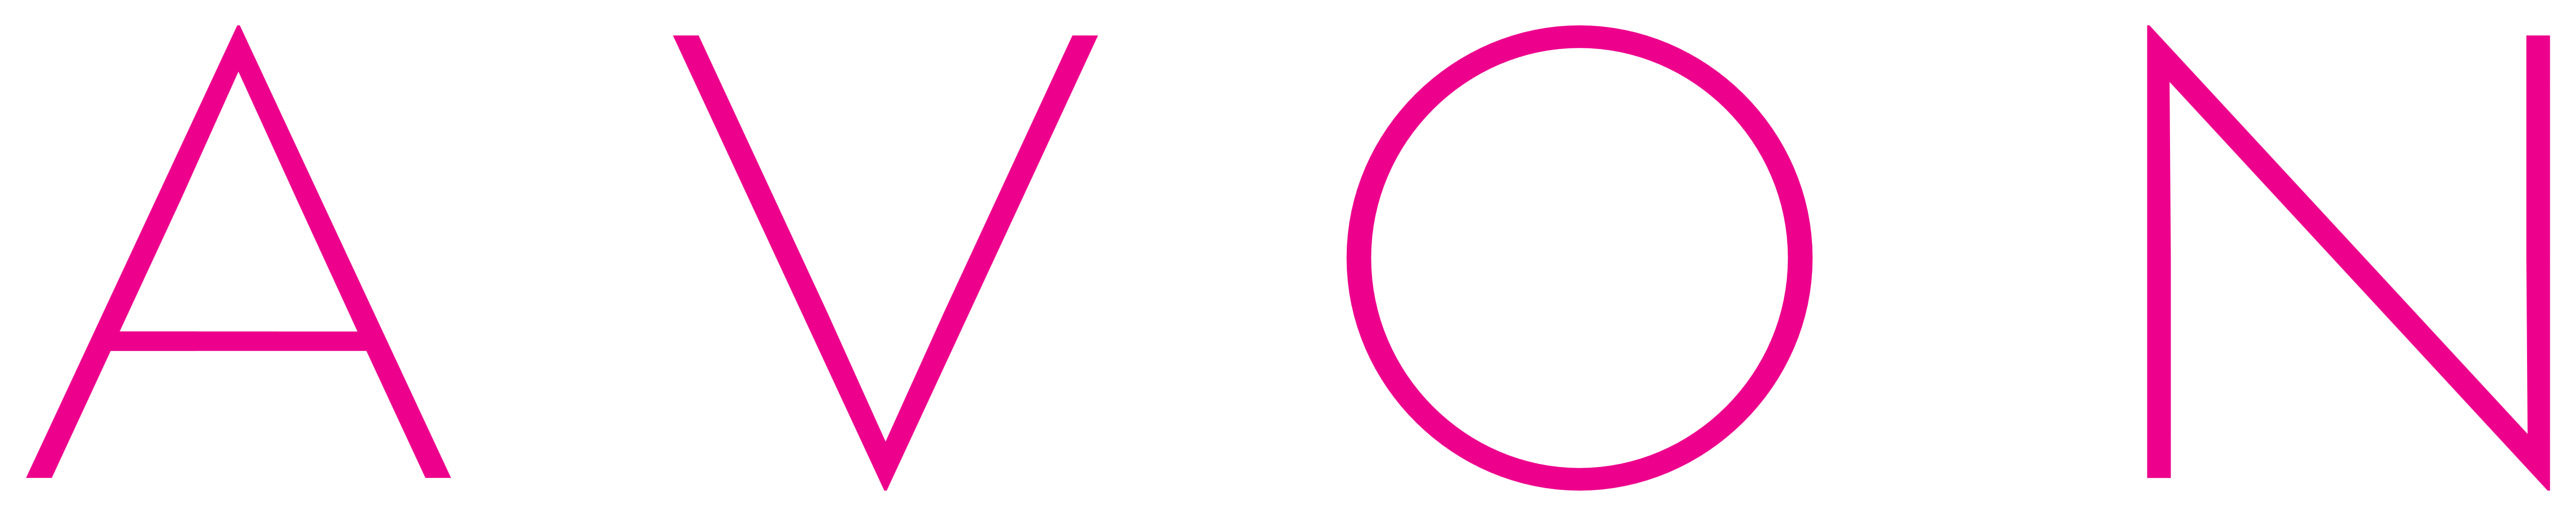 Avon Logos Download